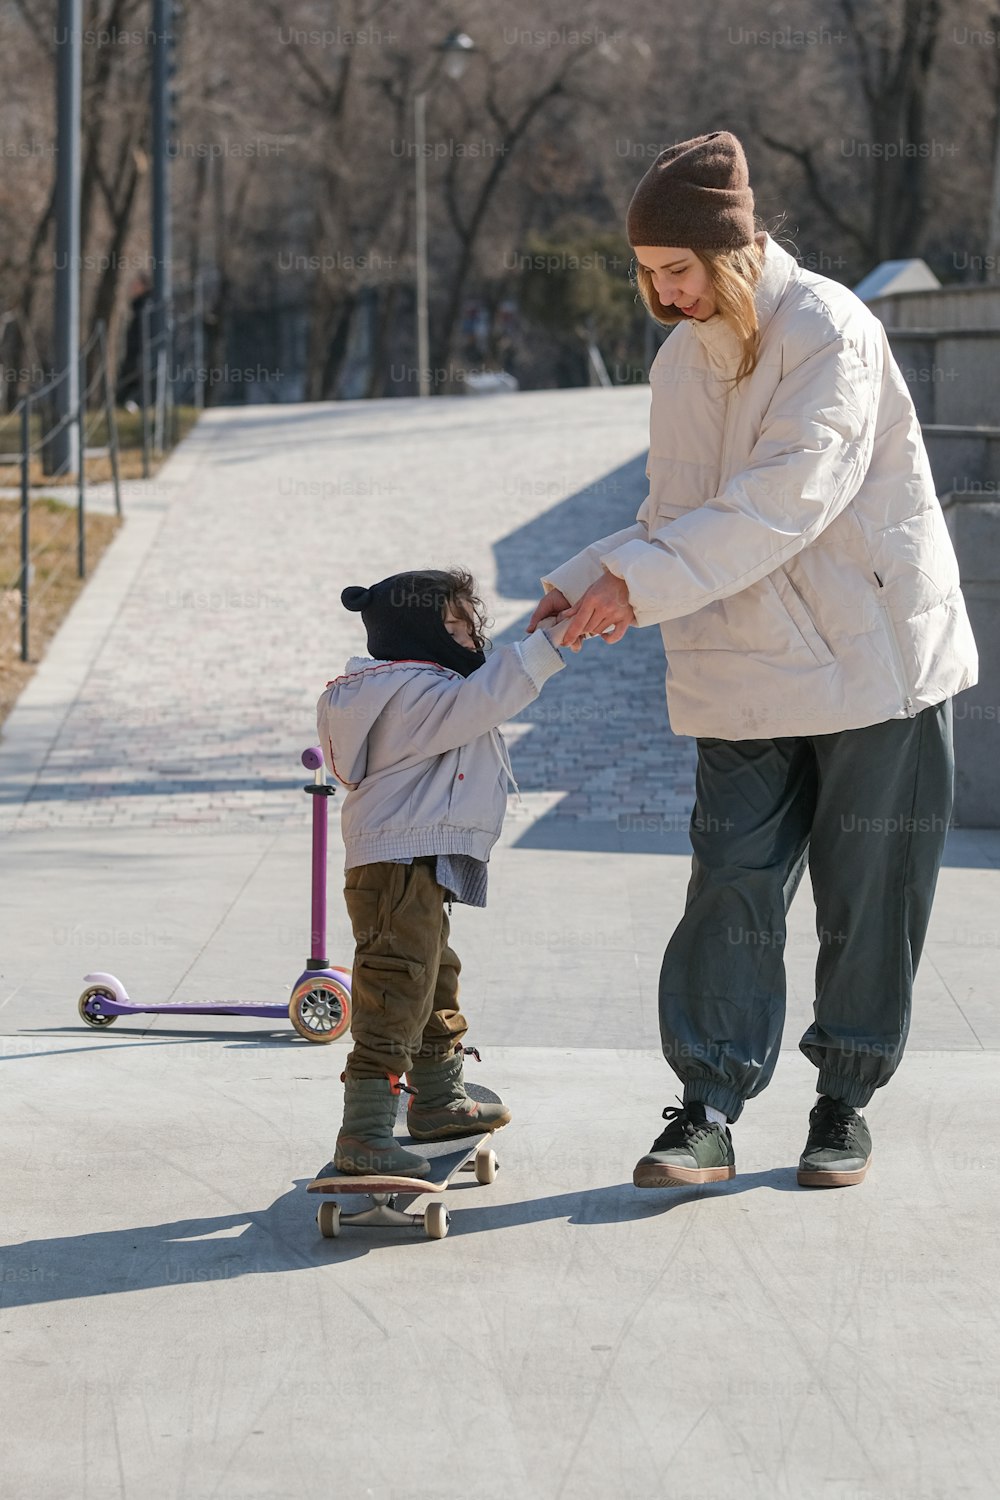 Ein Mann, der einem kleinen Kind das Skateboardfahren beibringt